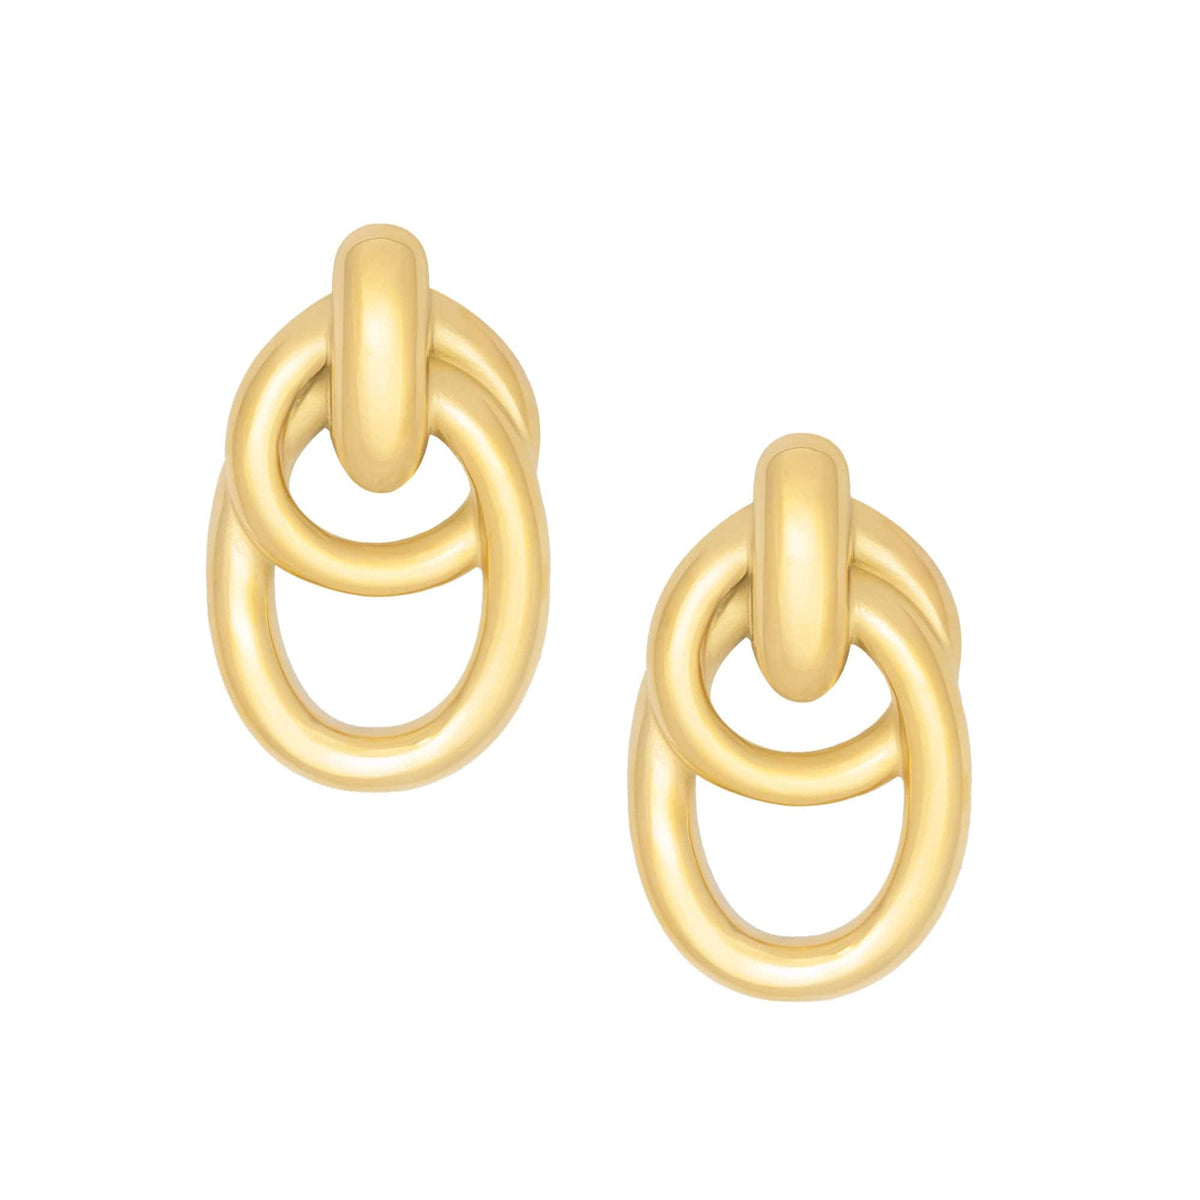 Bohomoon Stainless Steel Stacey Stud Earrings